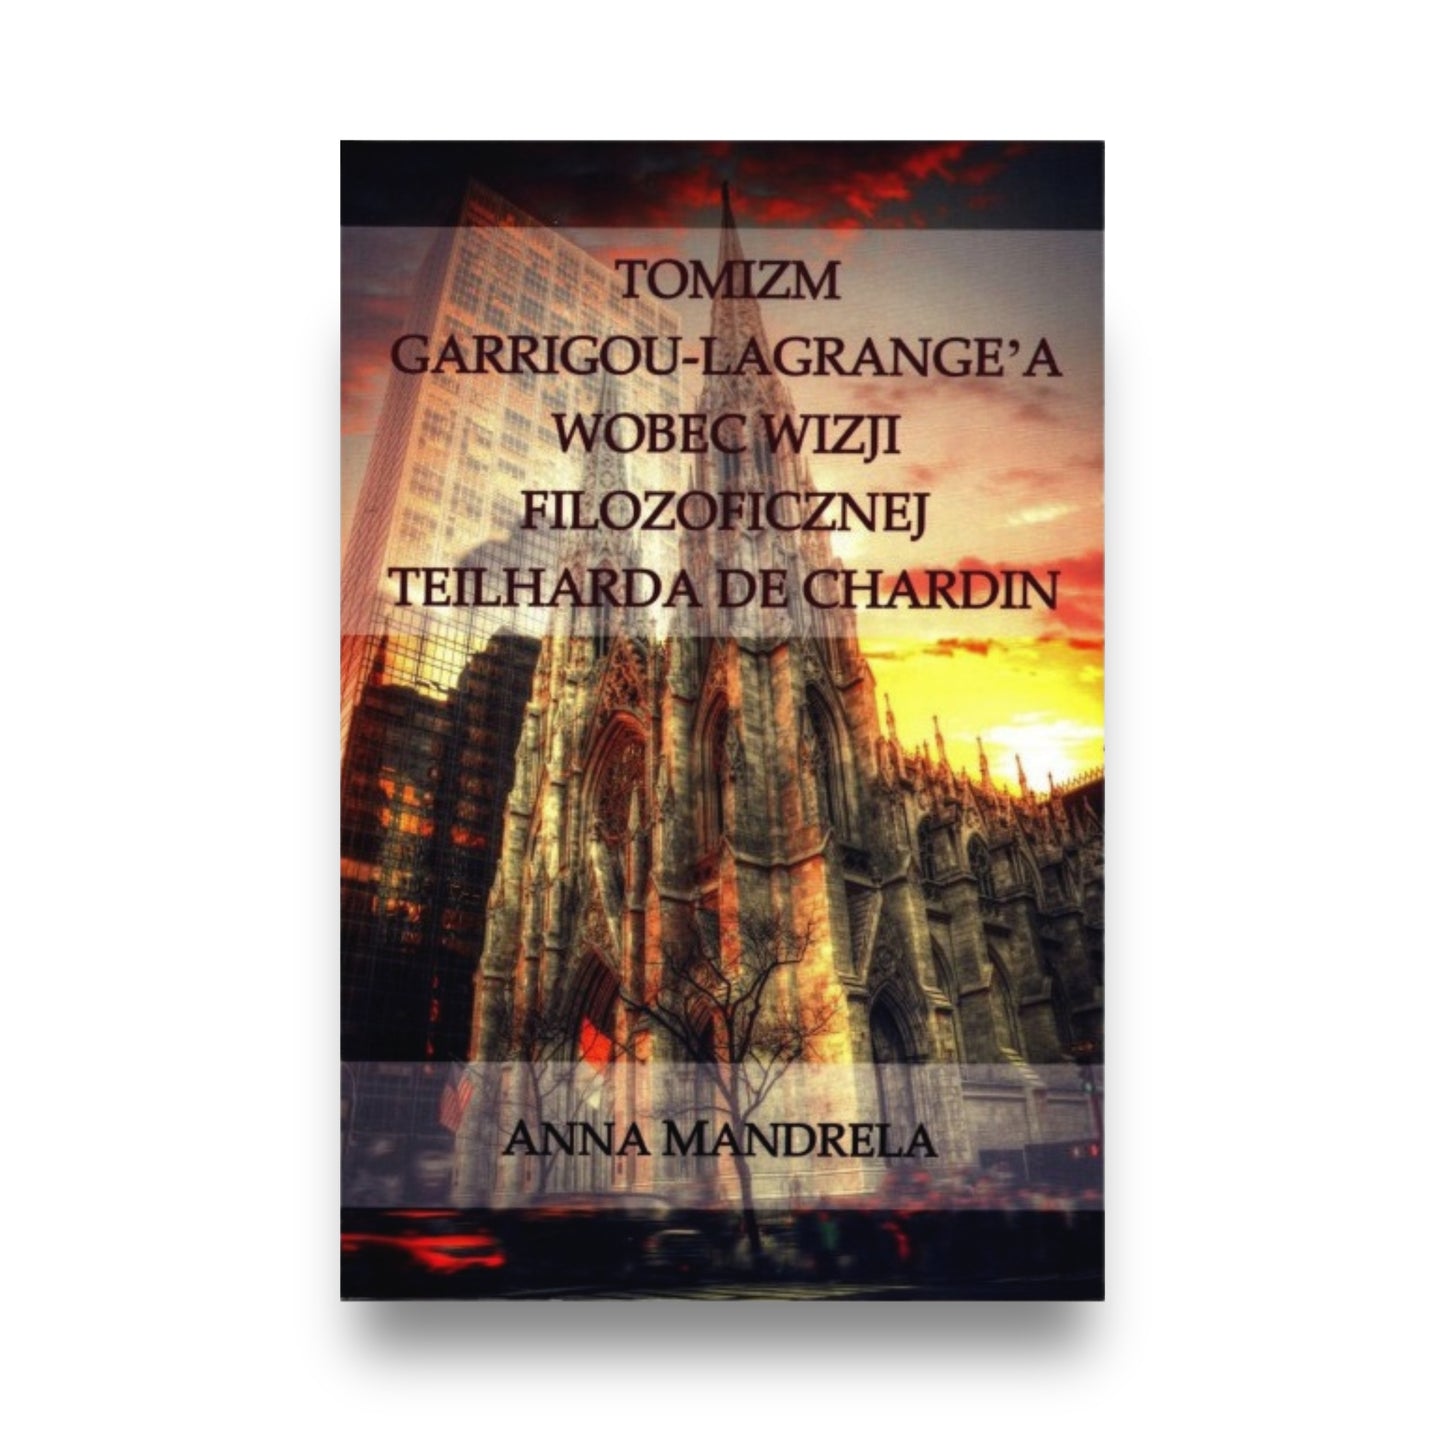 Anna Mandrela - Tomizm Garrigou-Lagrange'a wobec wizji filozoficznej Teilharda de Chardin